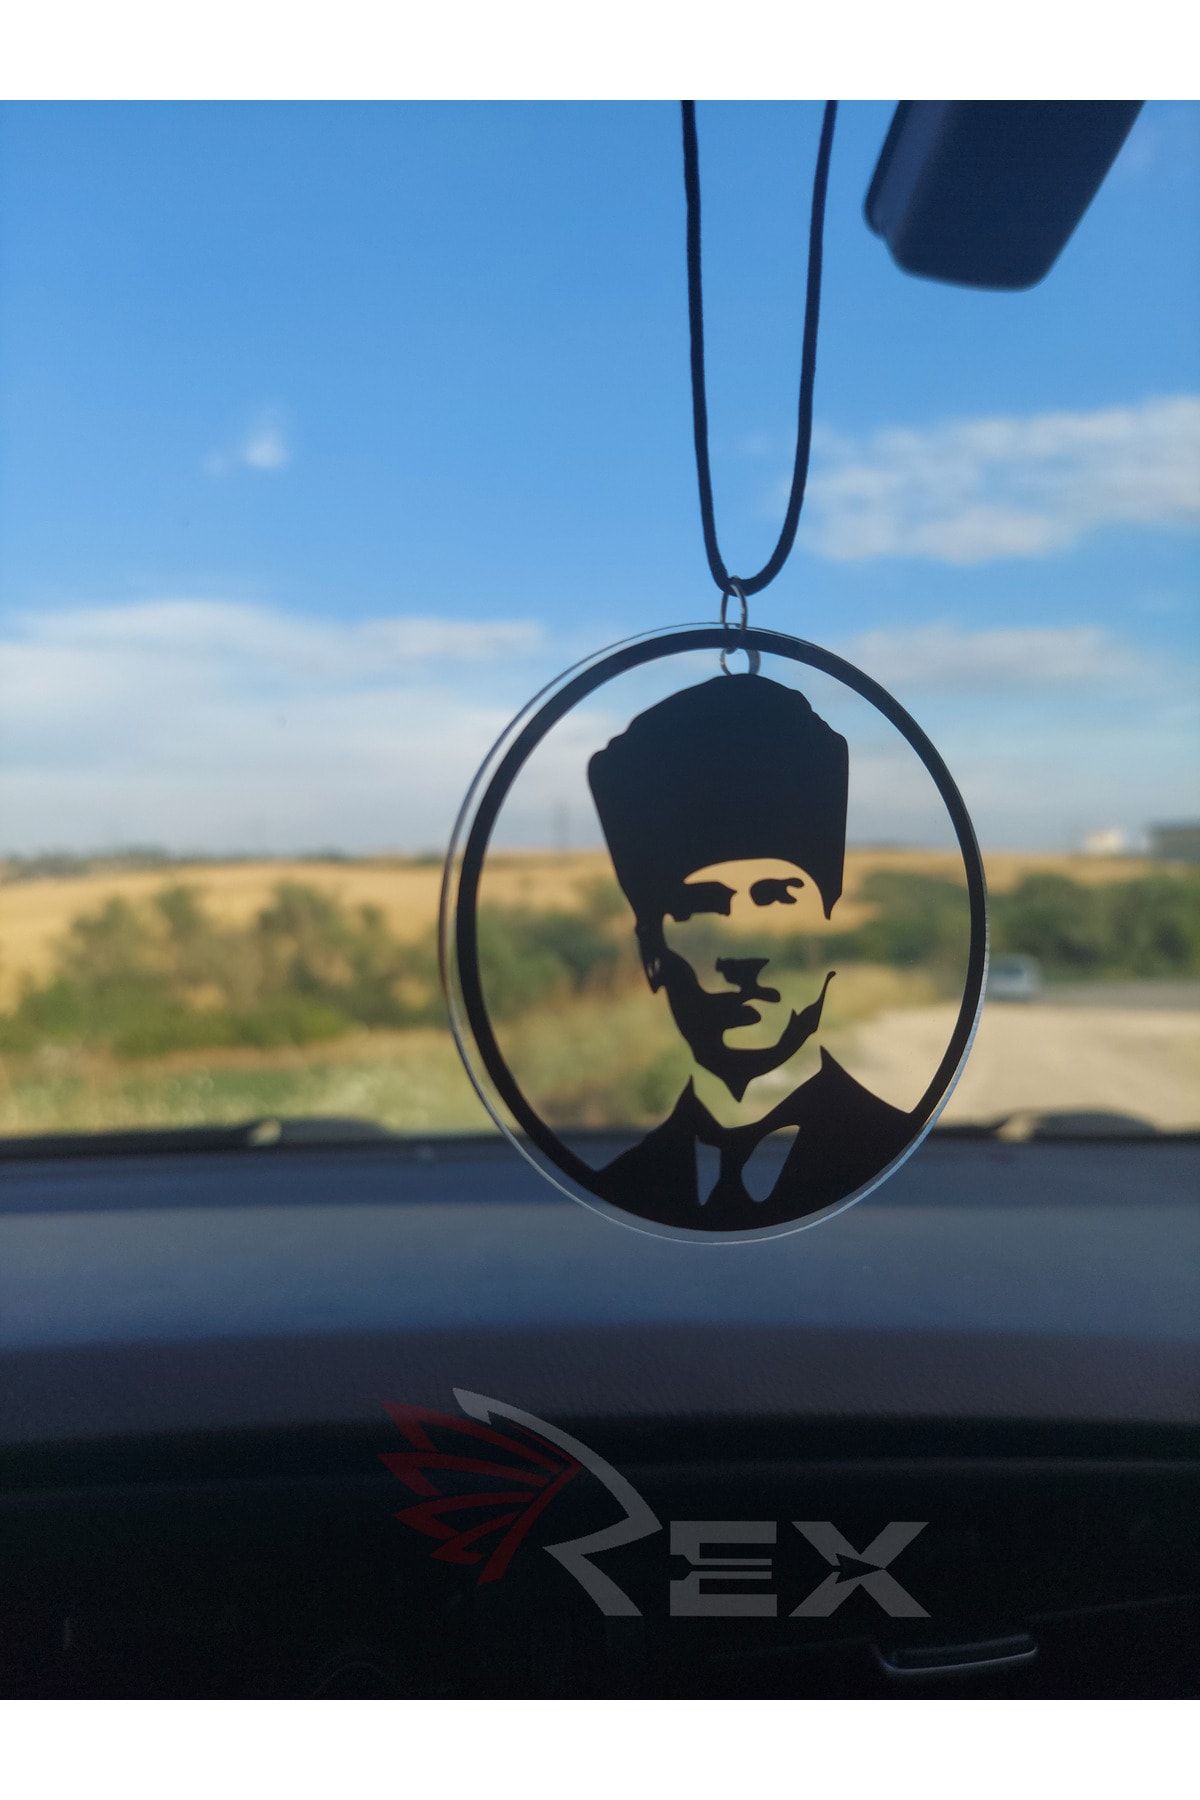 Rex Aksesuar Atatürk Portresi Dikiz Ayna Süsü Atatürk Portresi Ayna Süsü Yeni Trend Araç Ayna Süsü Araba Süsü